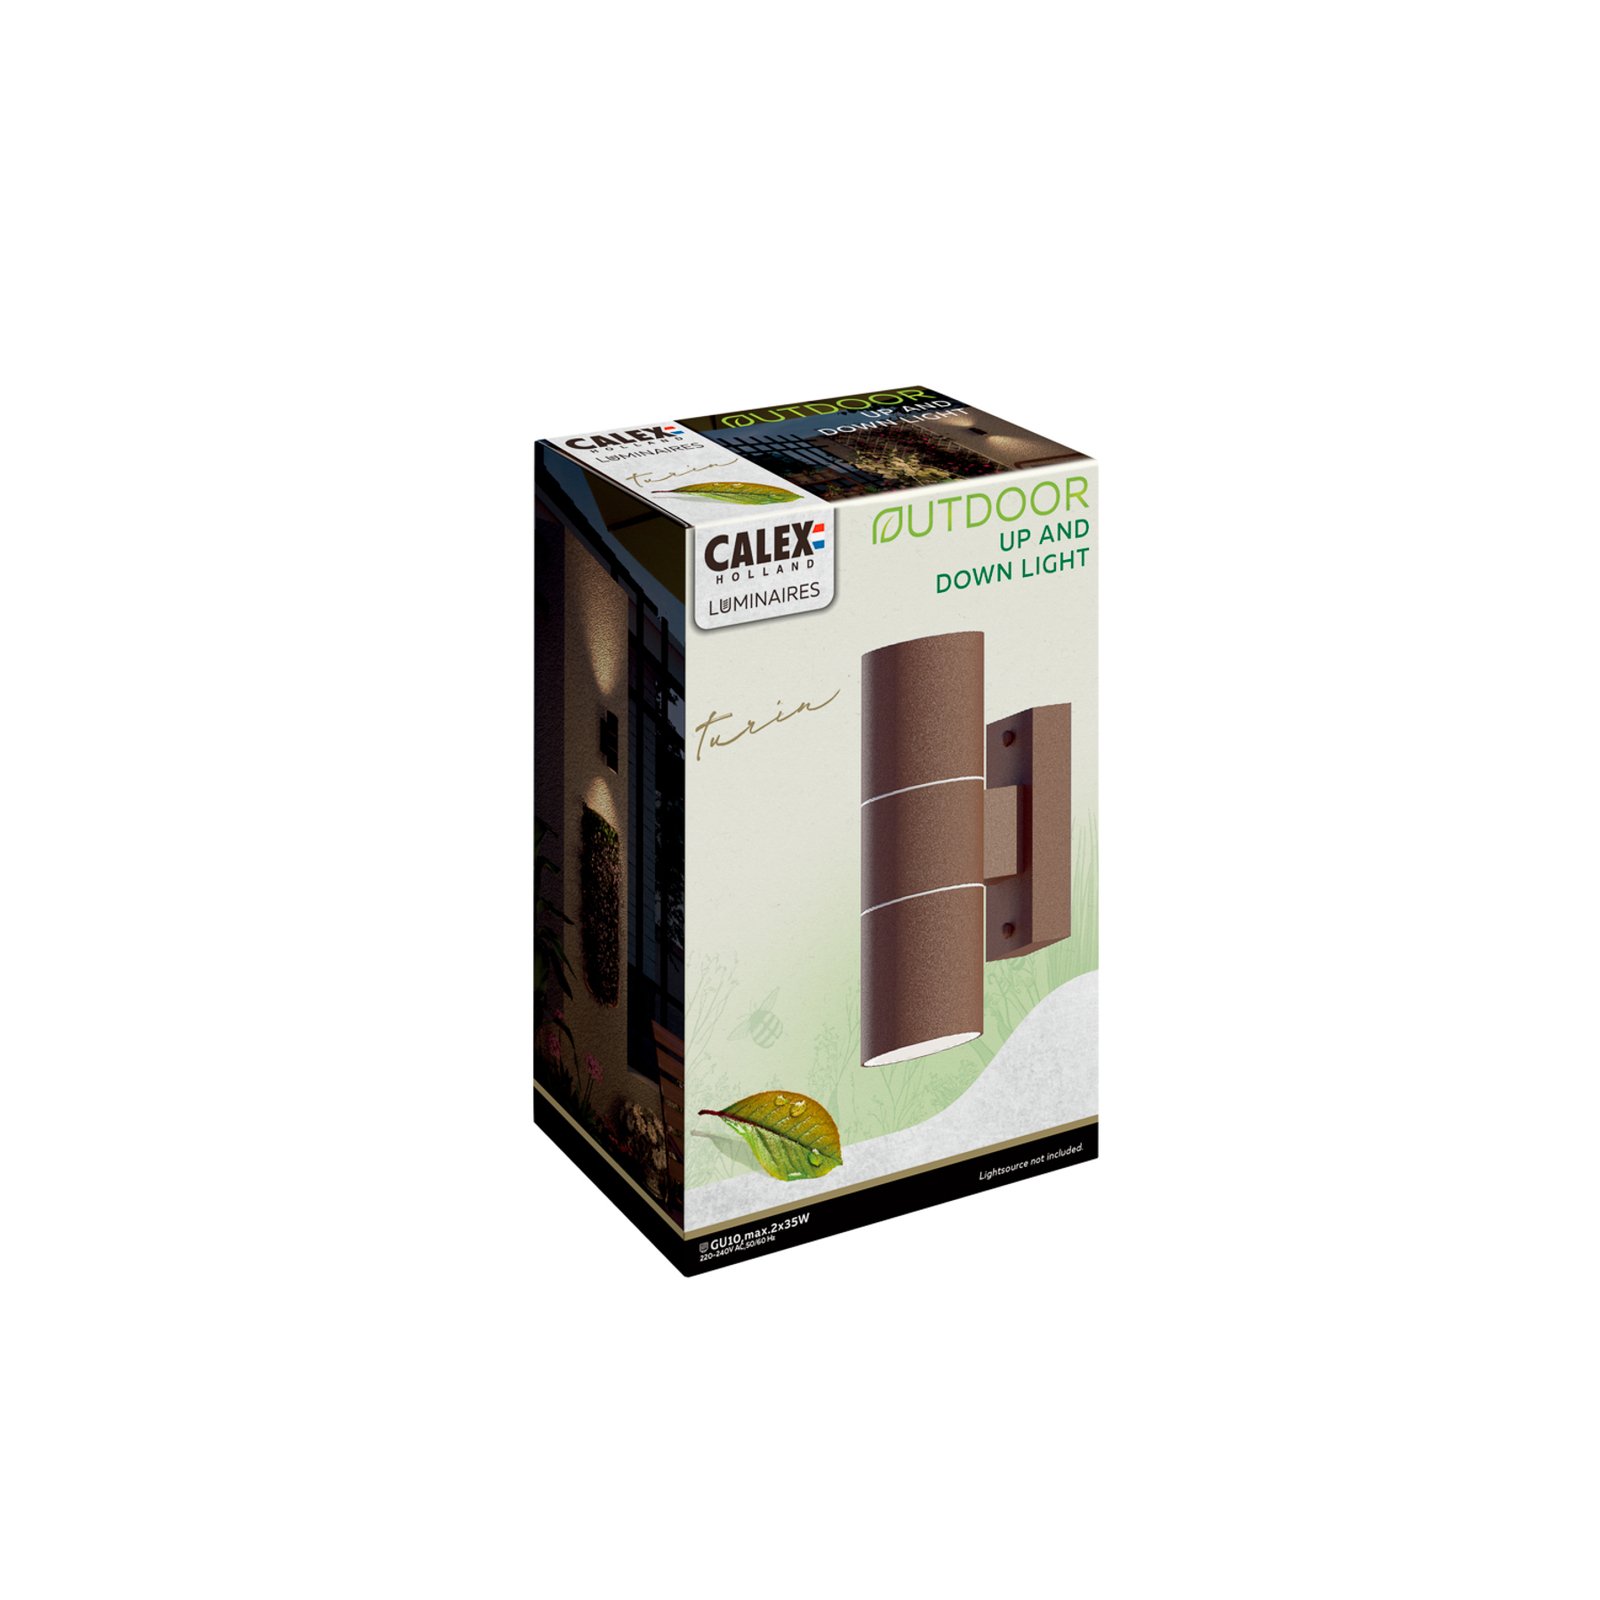 Calex applique d'extérieur GU10 acier inoxydable up/down 17 cm, brun